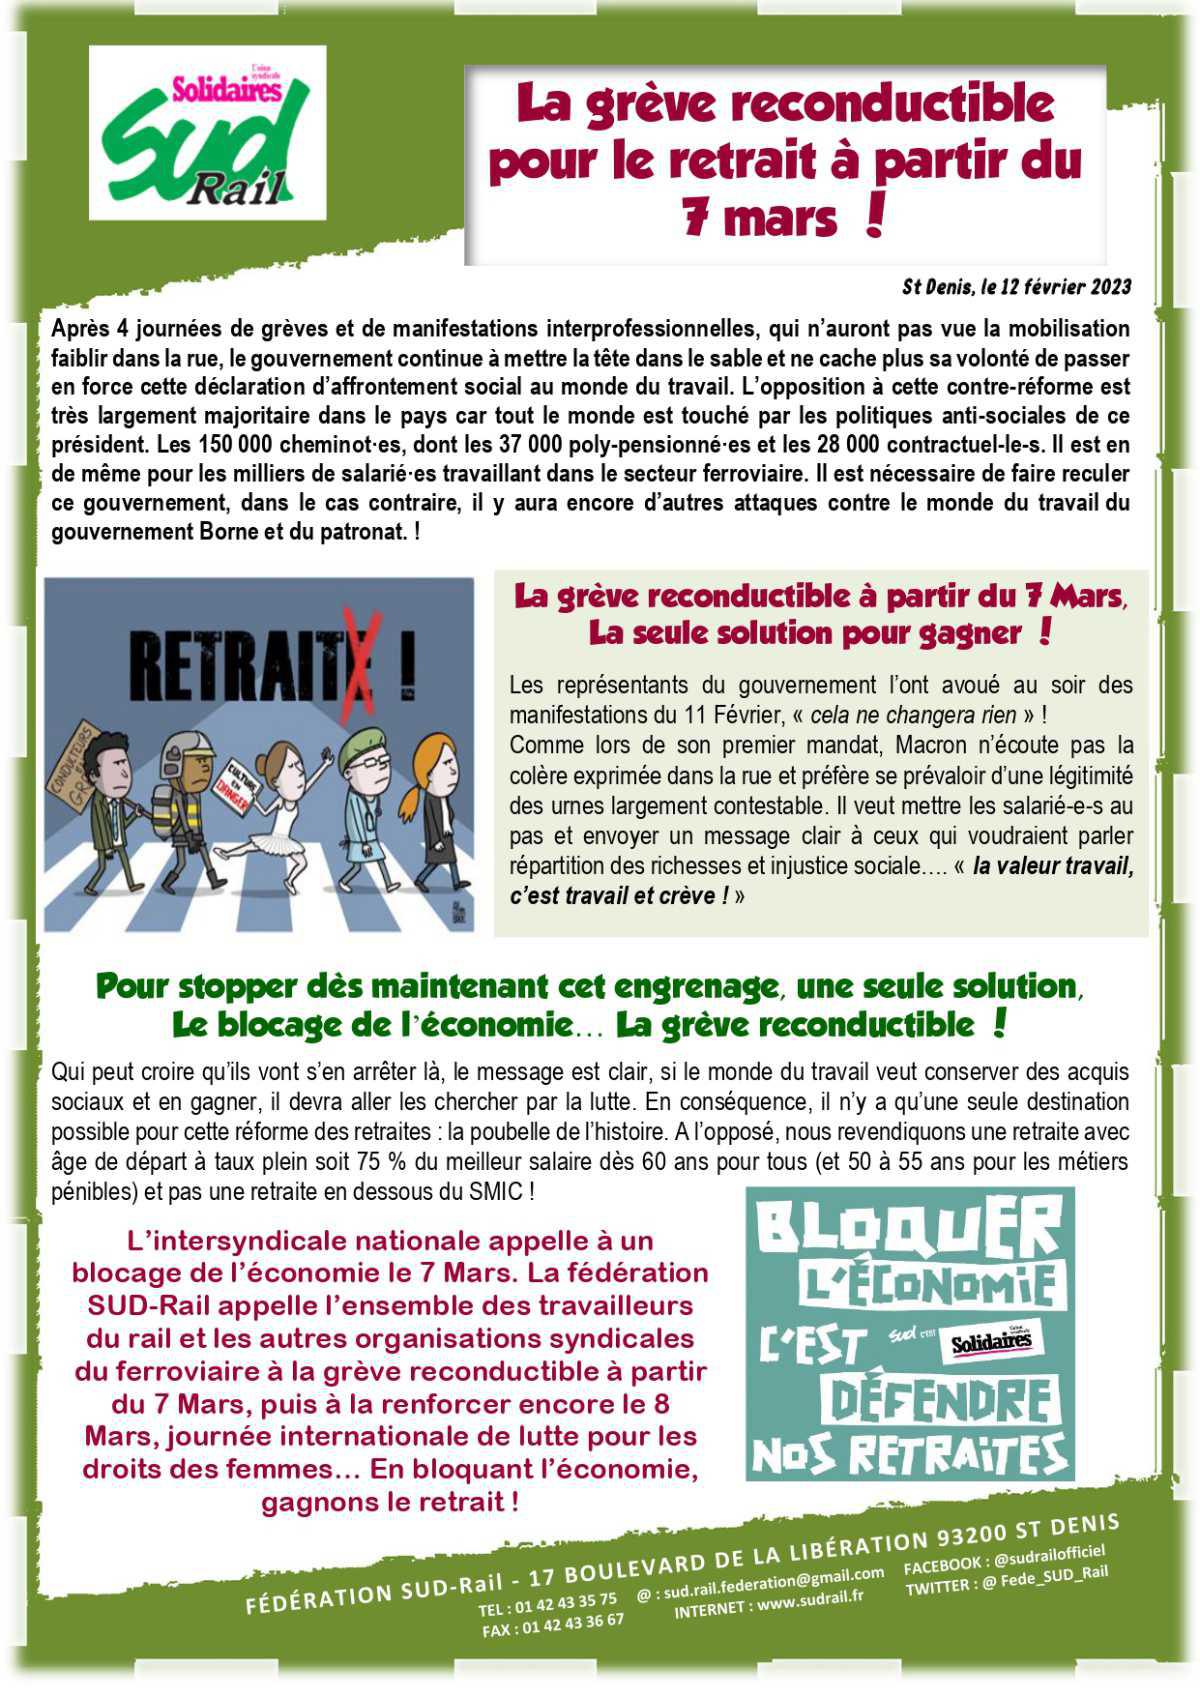 7 Mars - Grève Reconductible pour le retrait de la réforme retraite !